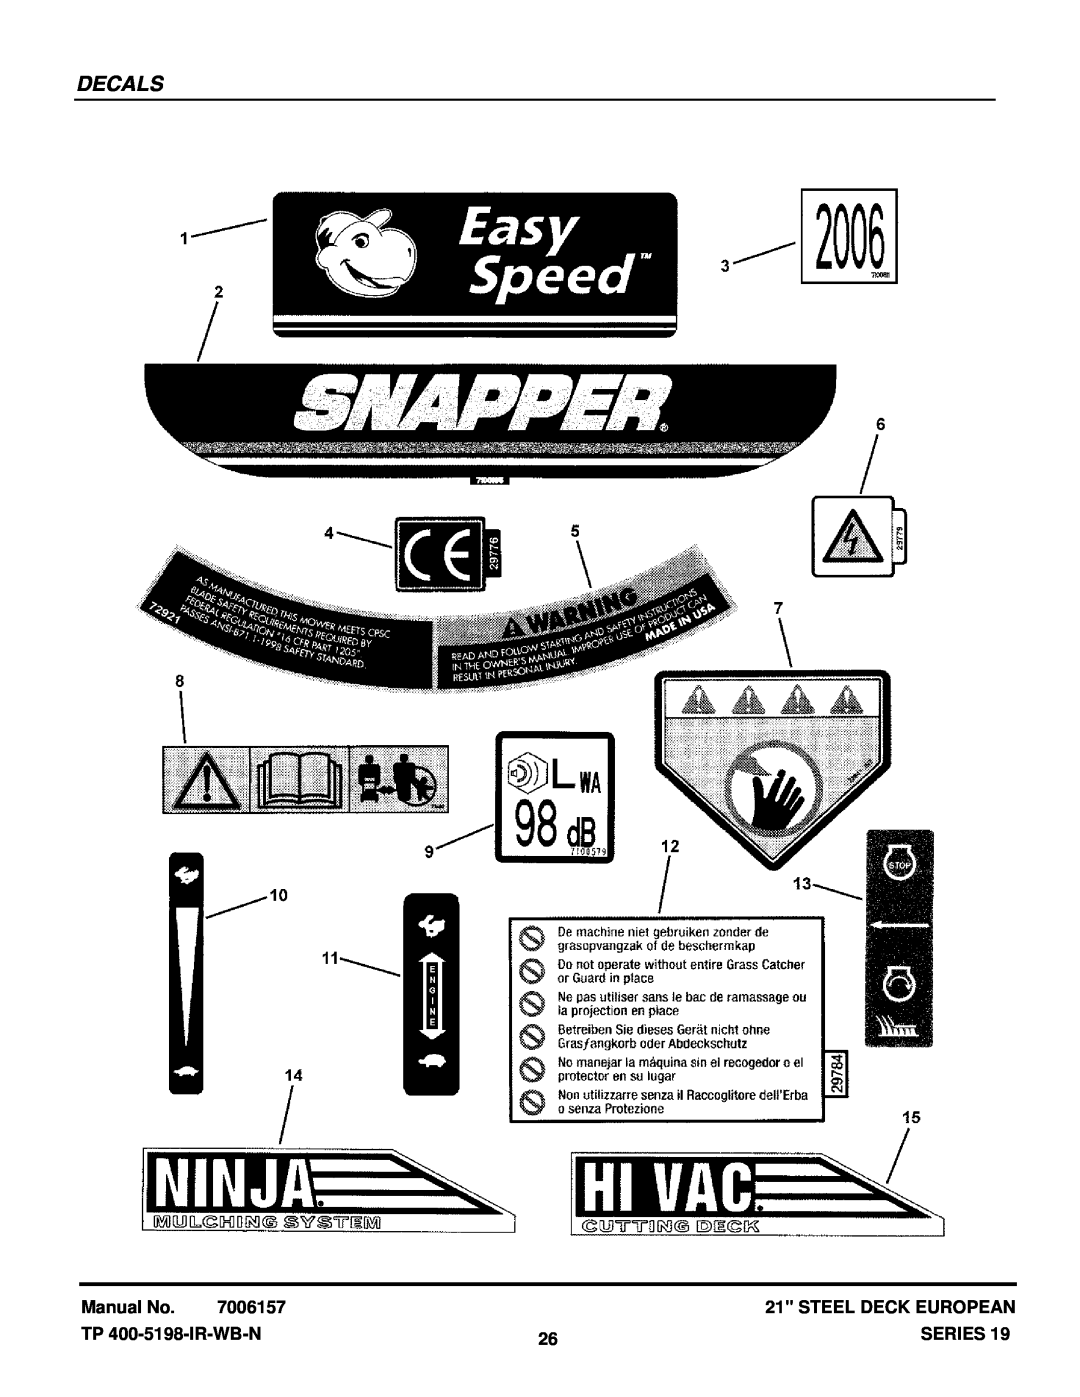 Snapper EP216751BV manual Decals, Manual No, 7006157, Steel Deck European, TP 400-5198-IR-WB-N, Series 